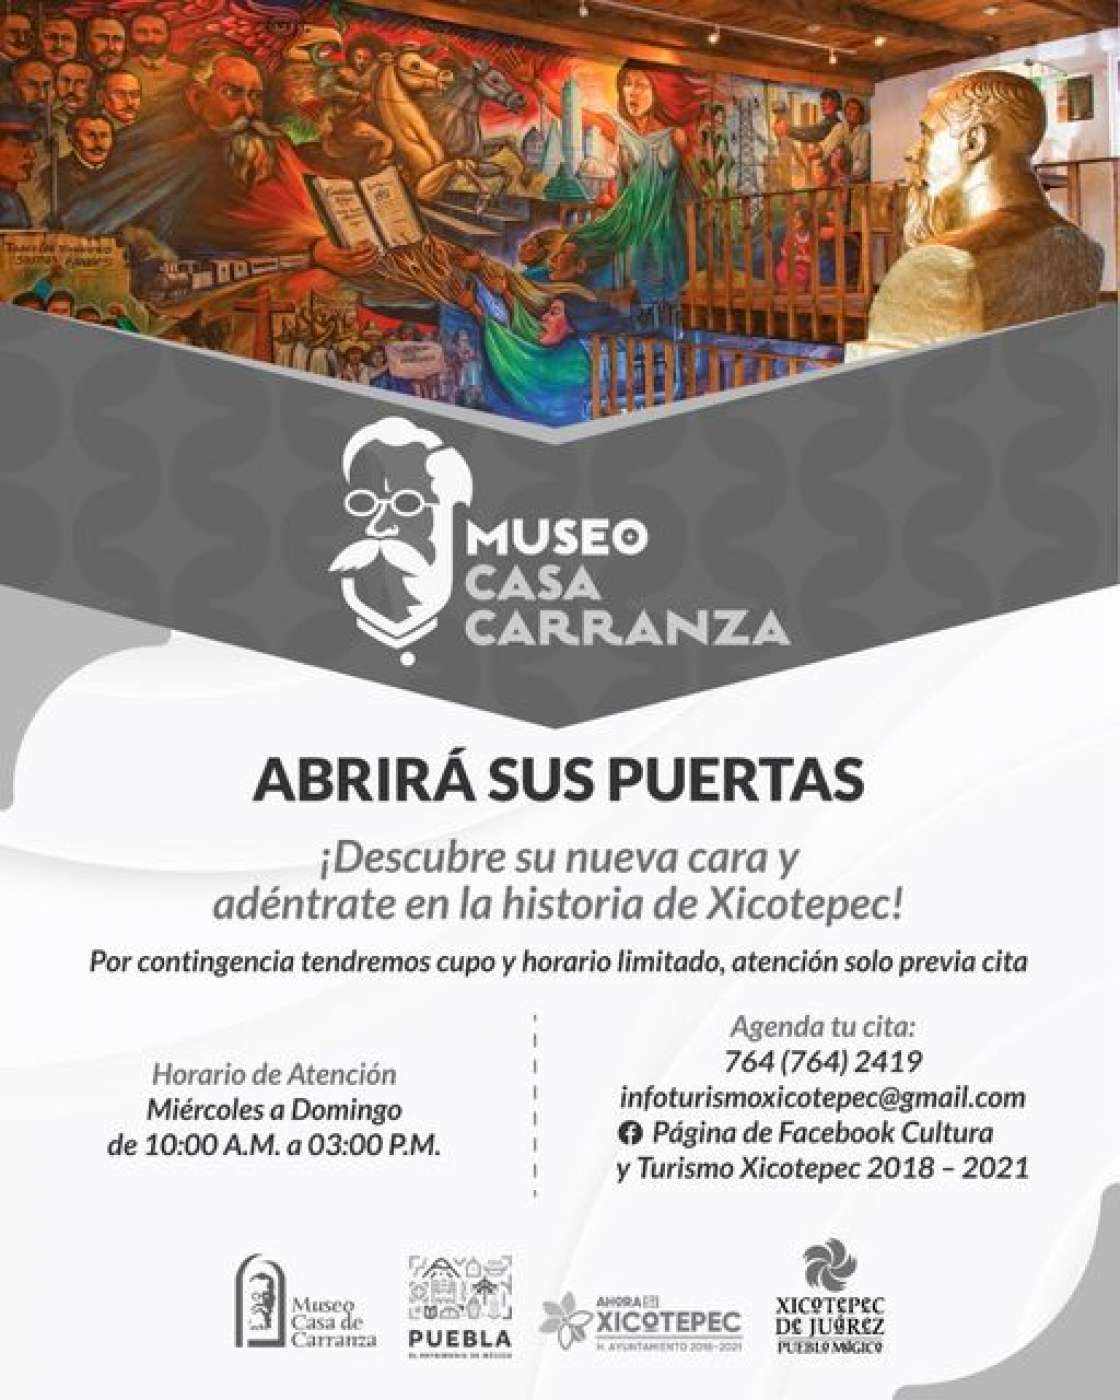 El Museo Casa Carranza en Xicotepec abrirá sus puertas de miércoles a domingo.